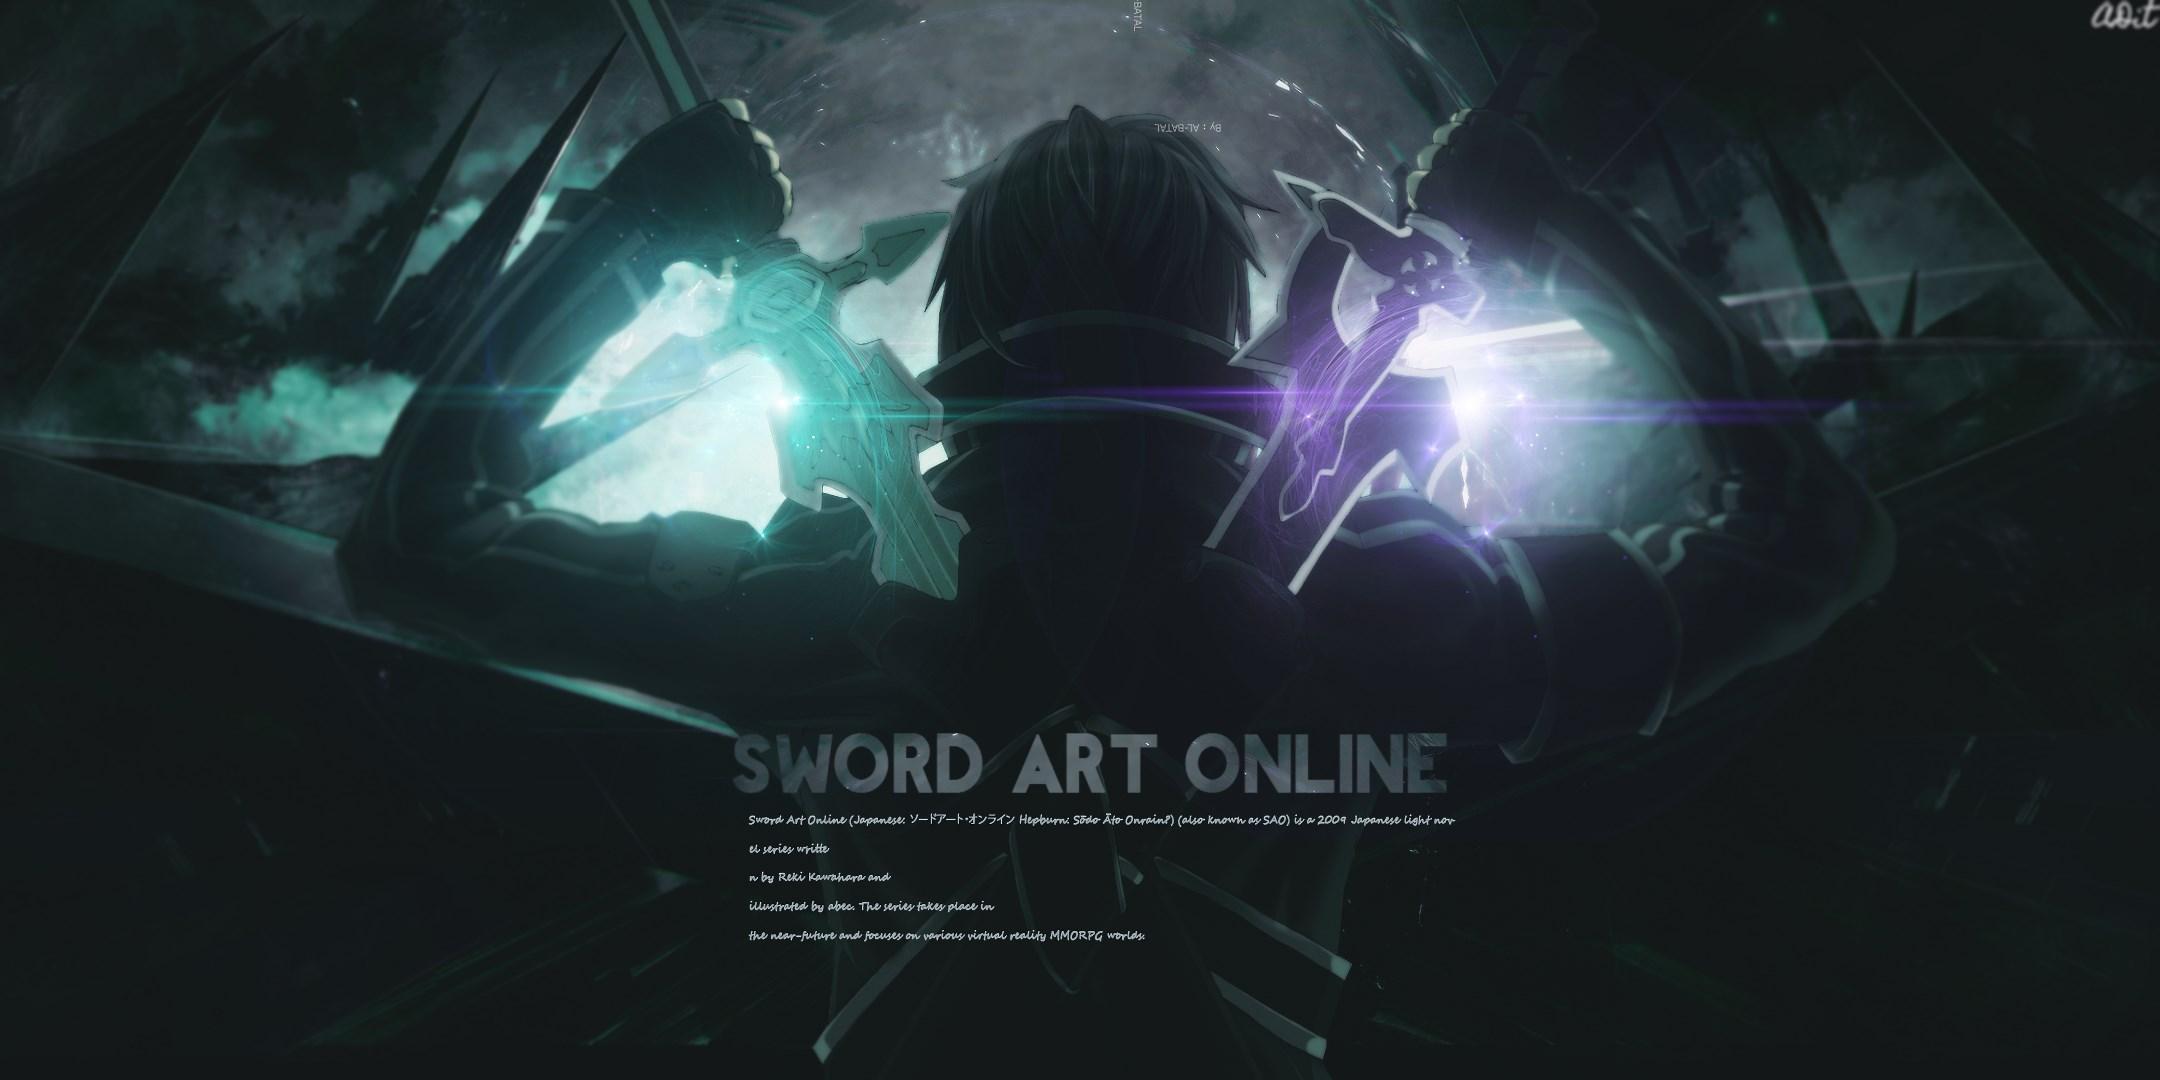 desktop wallpaper for sword art online. Anime. Tokkoro.com